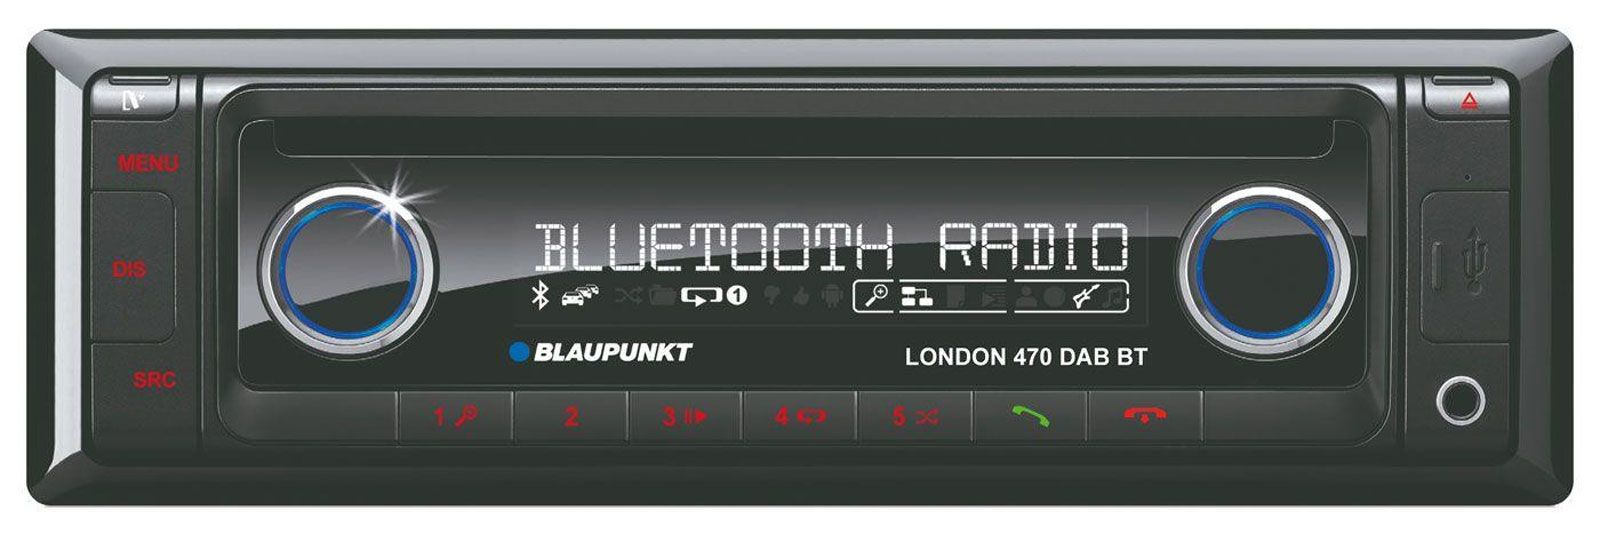 Blaupunkt London 470 DAB BT - CD/MP3-Autoradio mit Bluetooth / DAB / USB / SD / iPod / AUX-IN